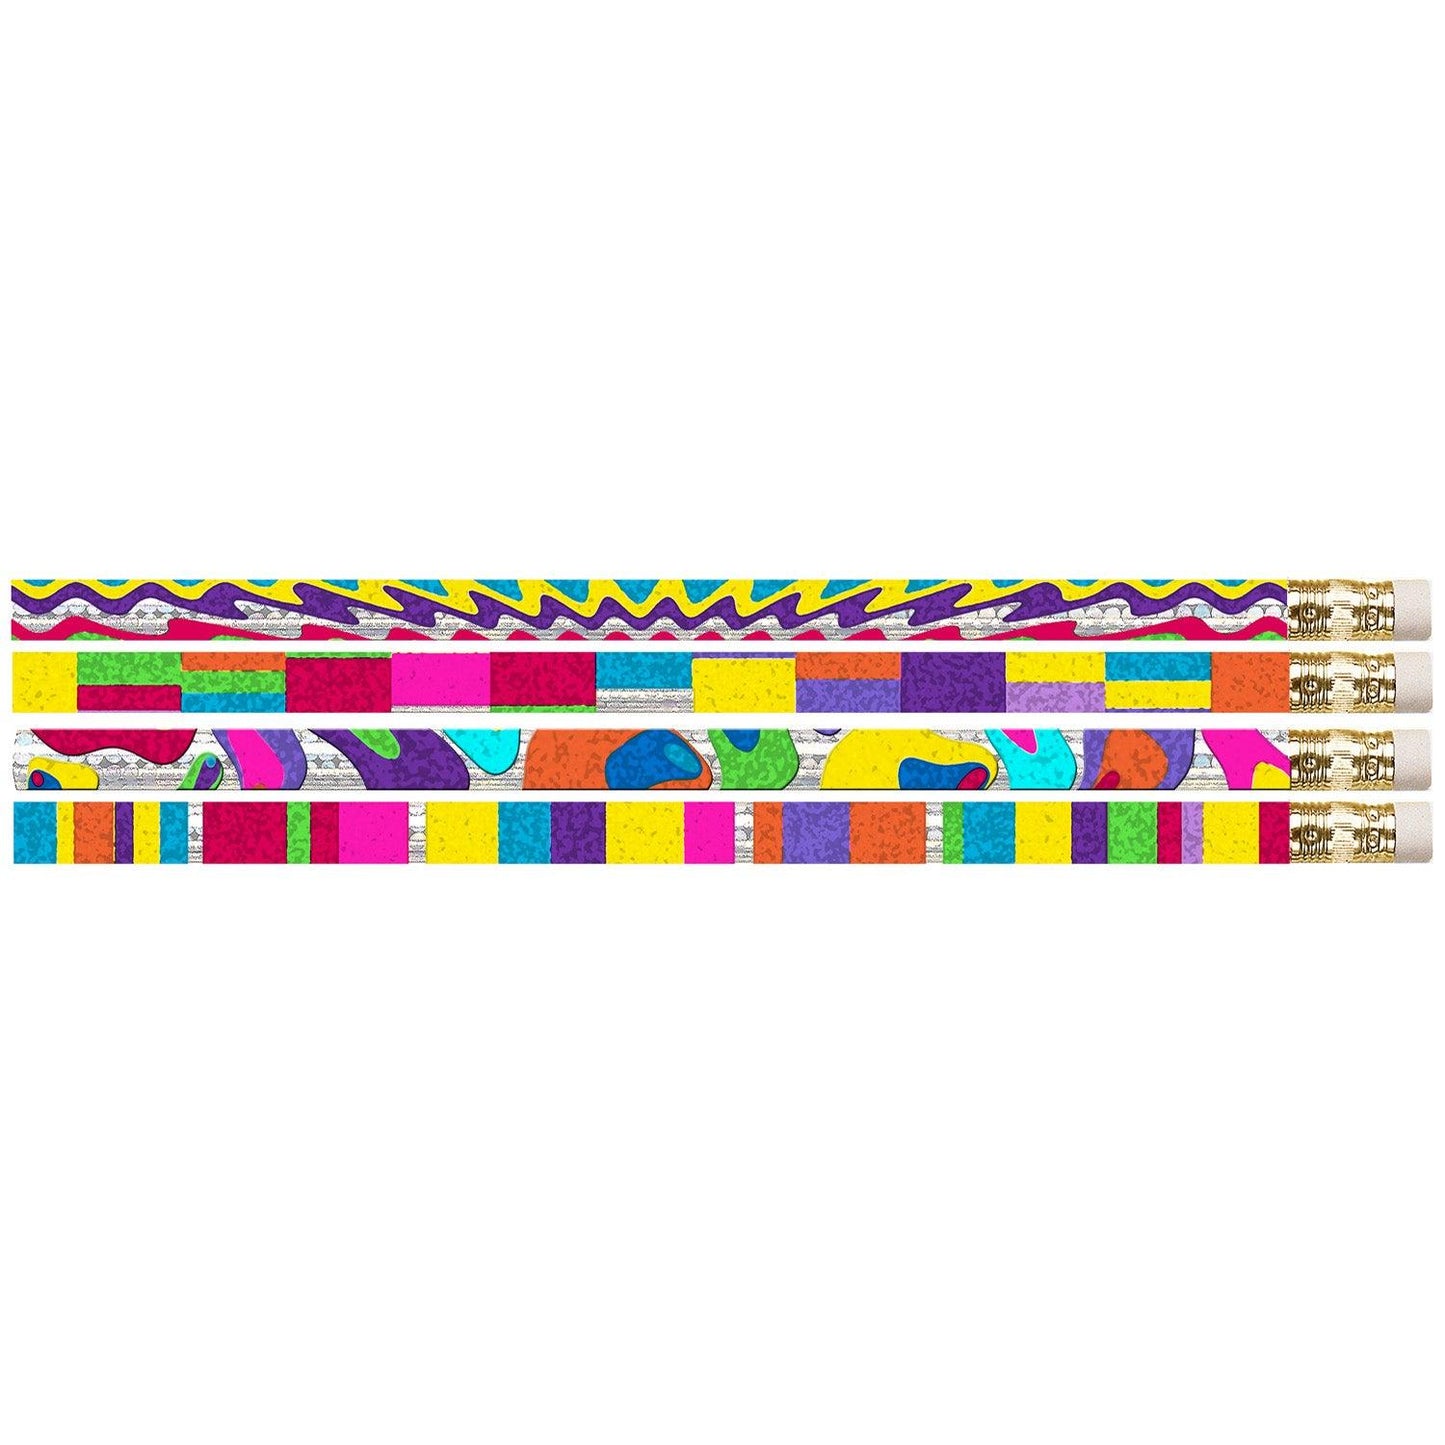 Watercolors Motivational/Fun Pencils, Pack of 144 - Loomini